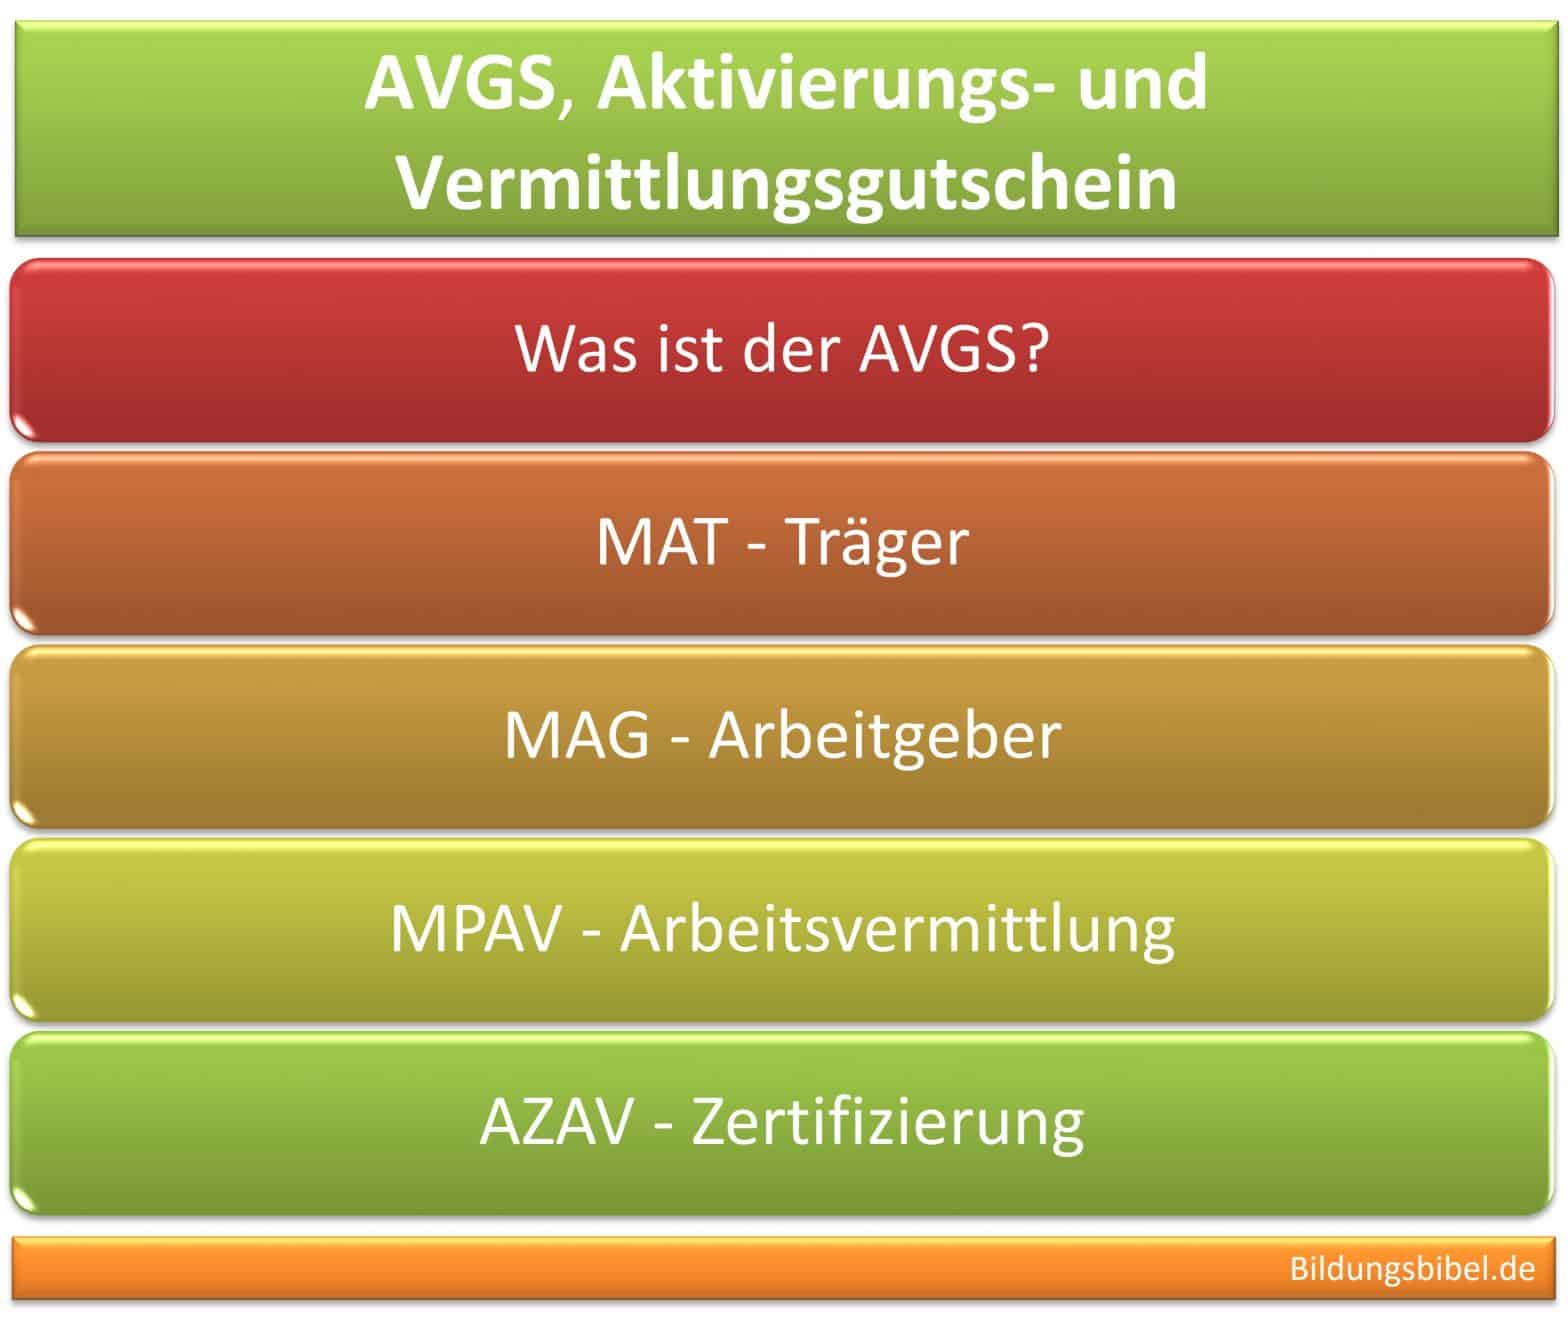 AVGS, Aktivierungs- und Vermittlungsgutschein, Info zu Zweck, Voraussetzungen und AZAV-Zertifizierung, AVGS Arten, MAT, MAG sowie MPAV.